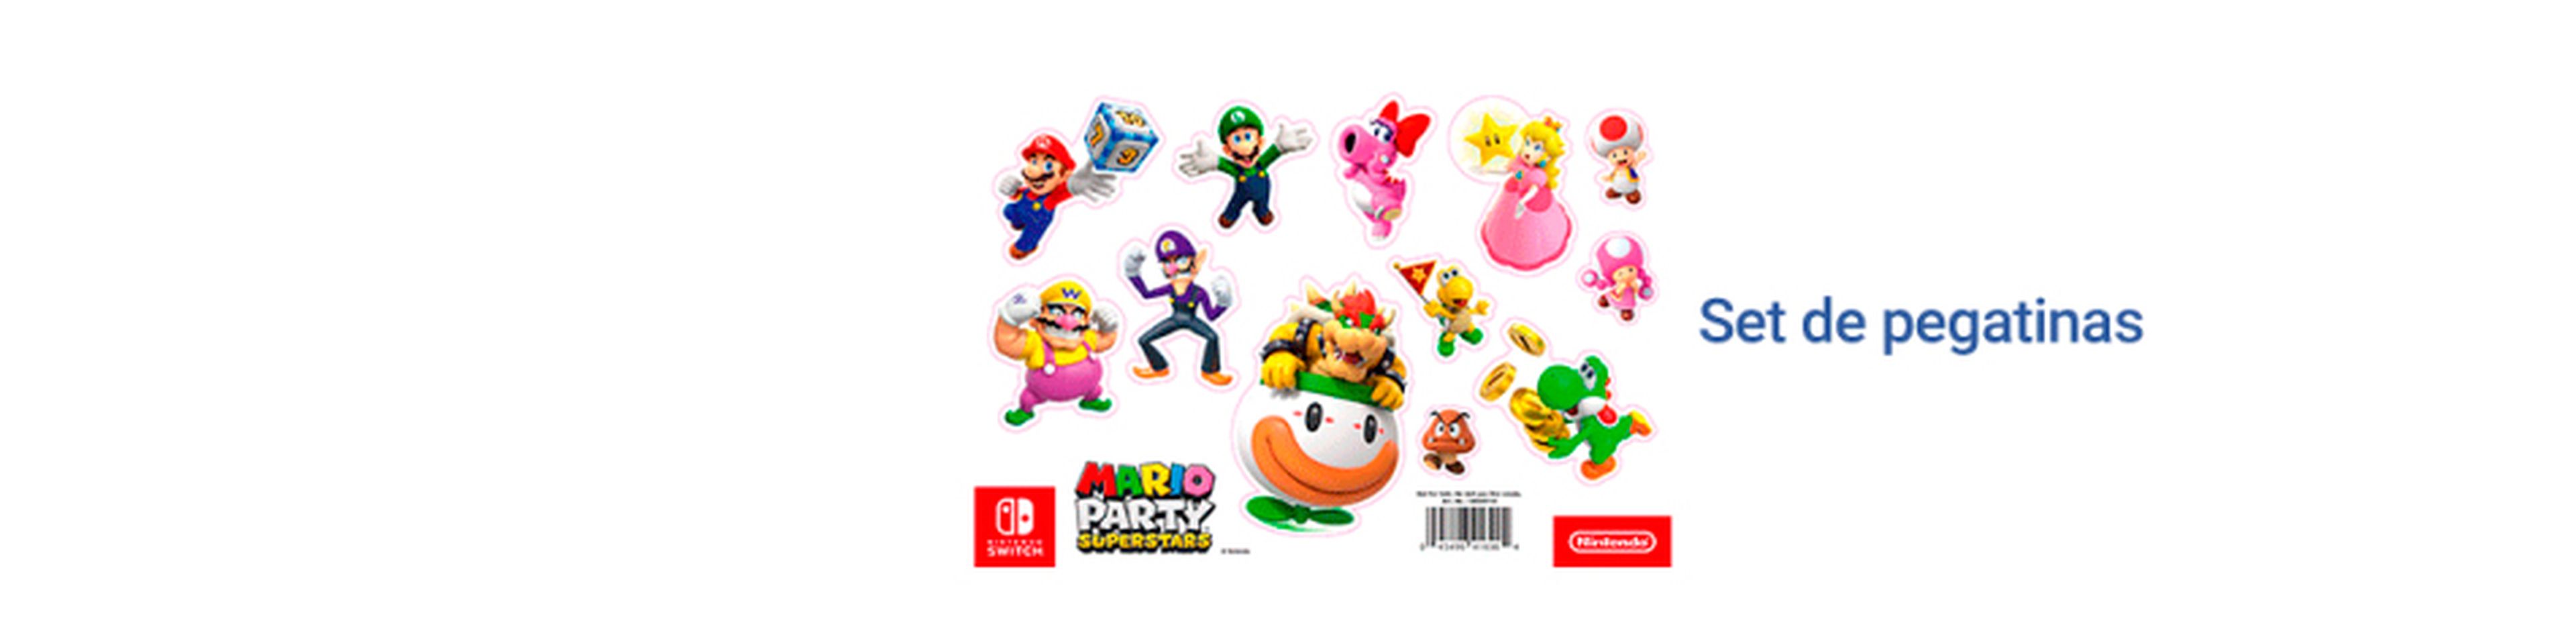 Mario Party Superstars pegatinas otras tiendas